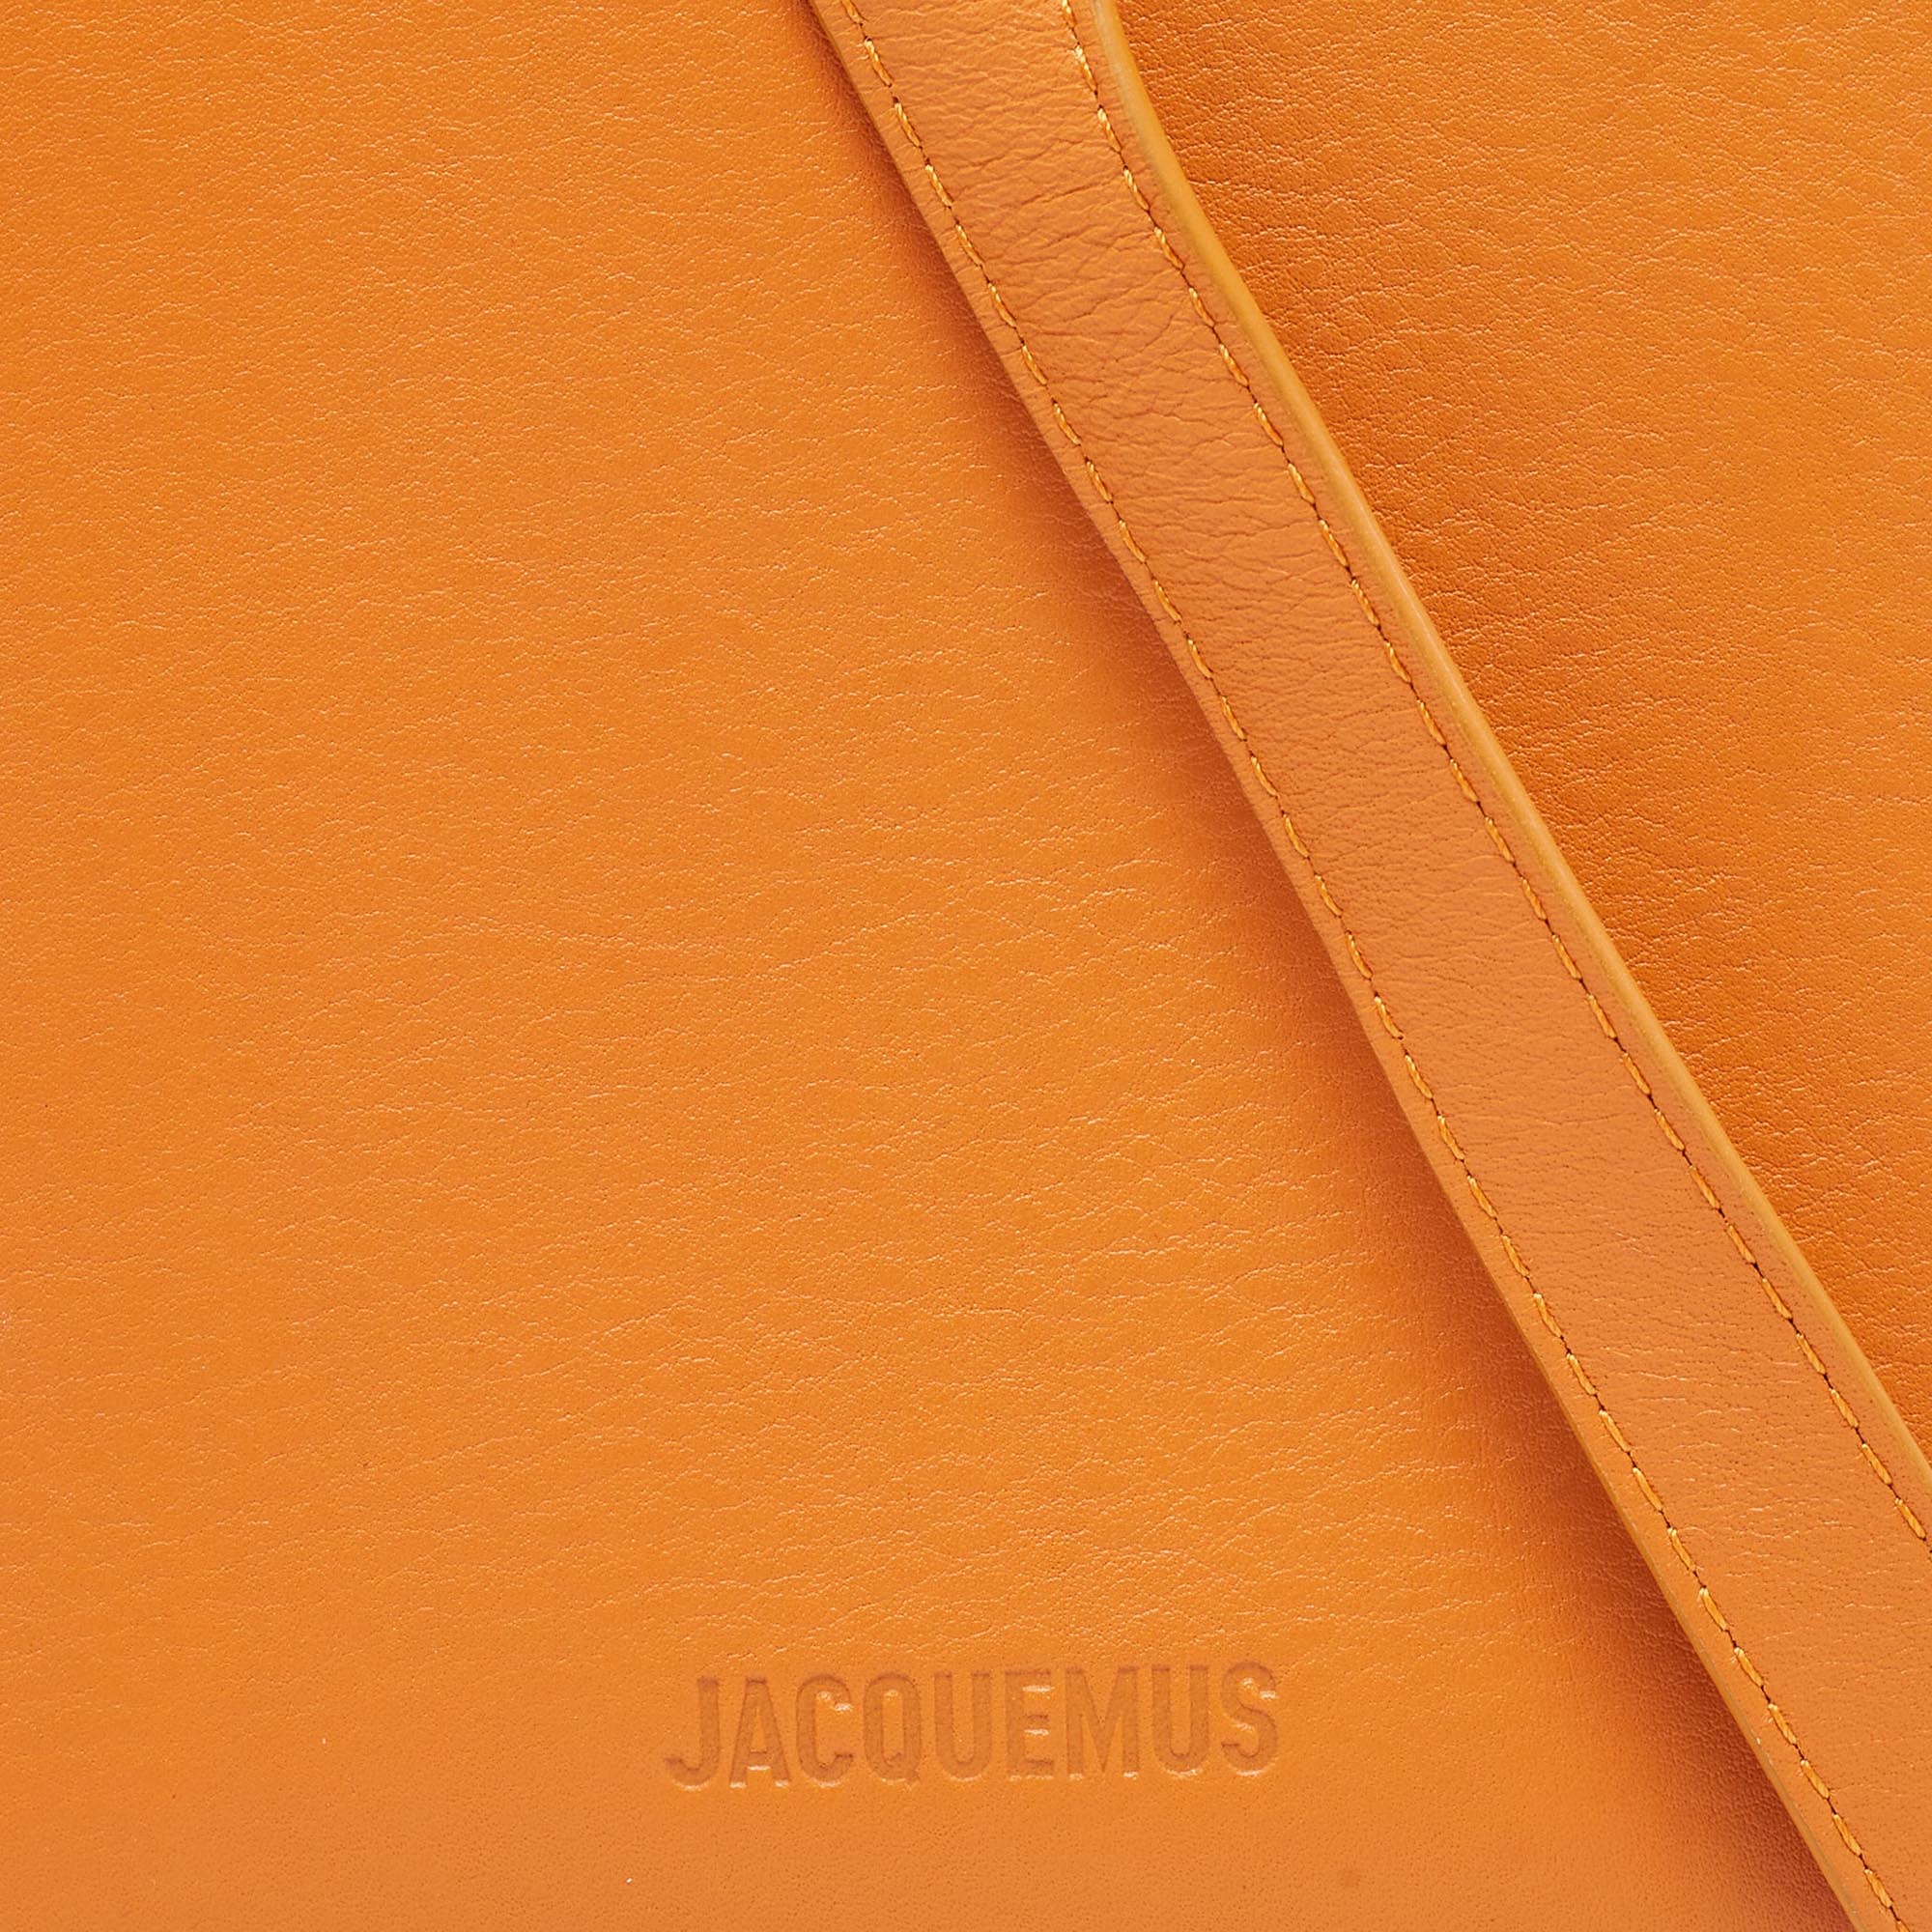 Jacquemus Orange Leather Le Gadju Neck Wallet